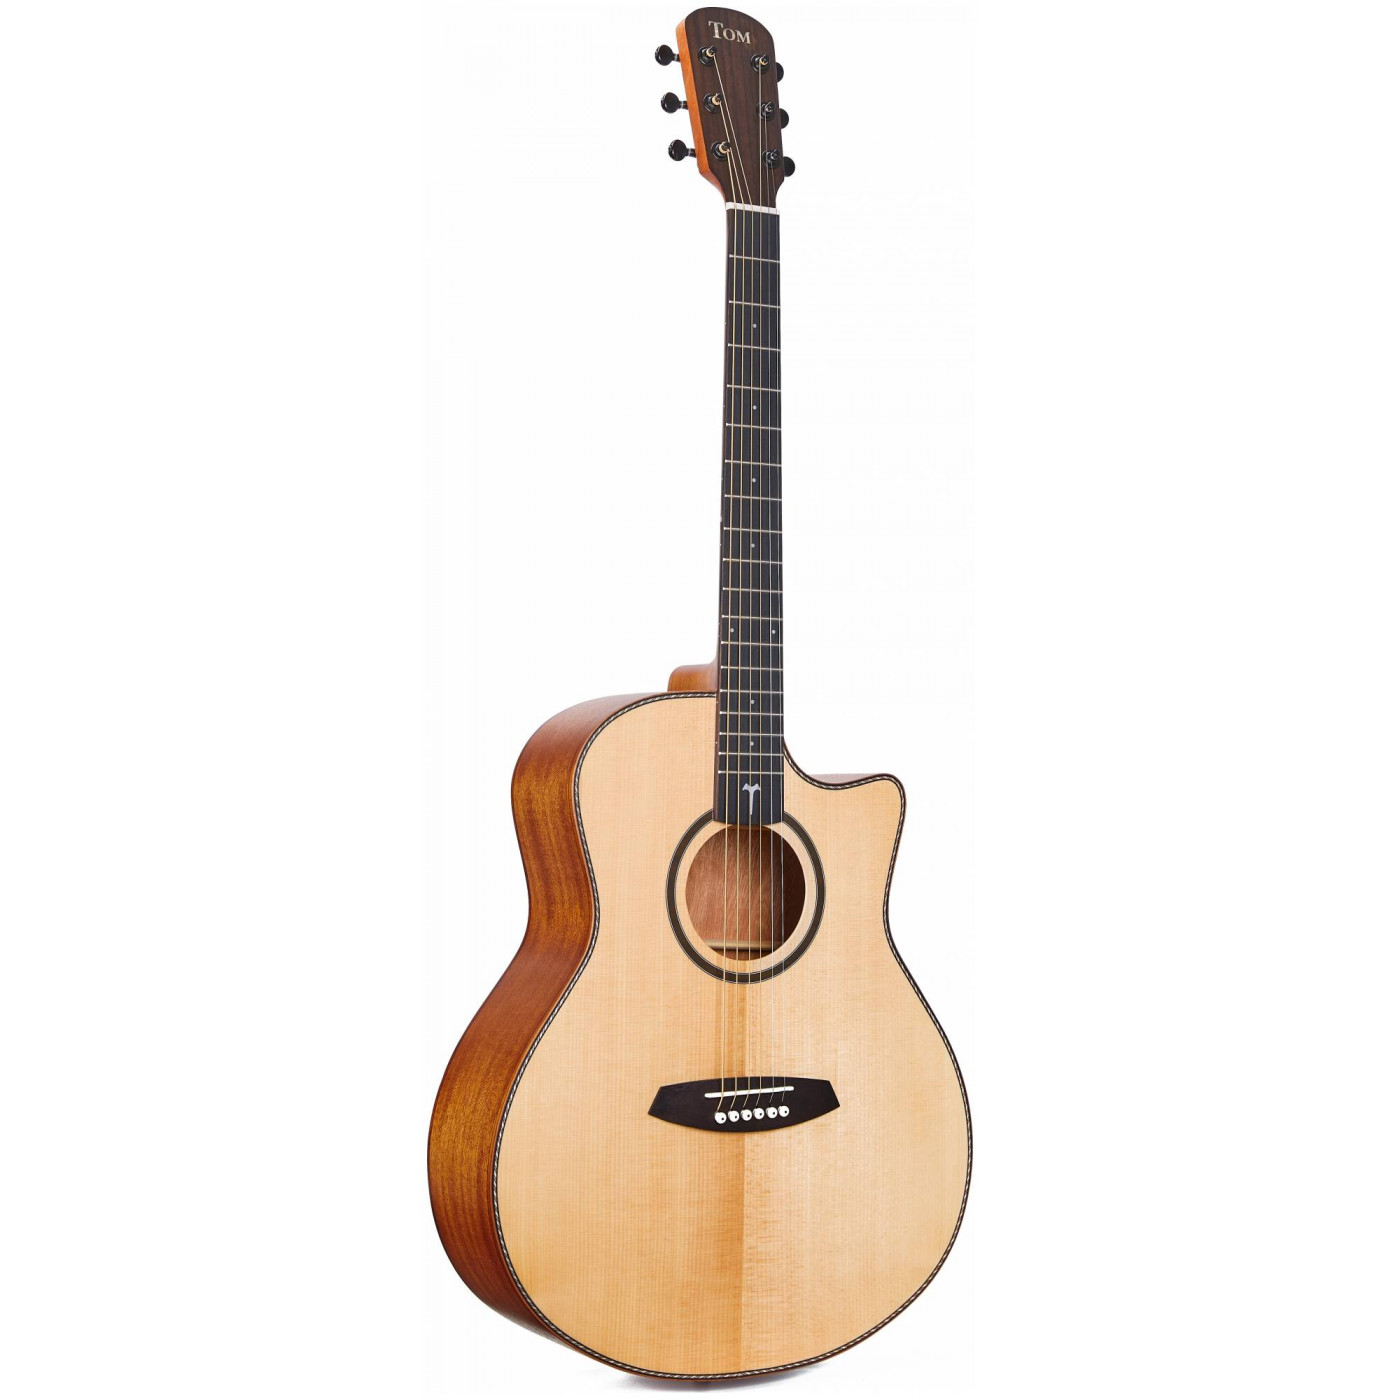 Акустические гитары TOM GA-T1M гитара акустическая дерево 97см с вырезом